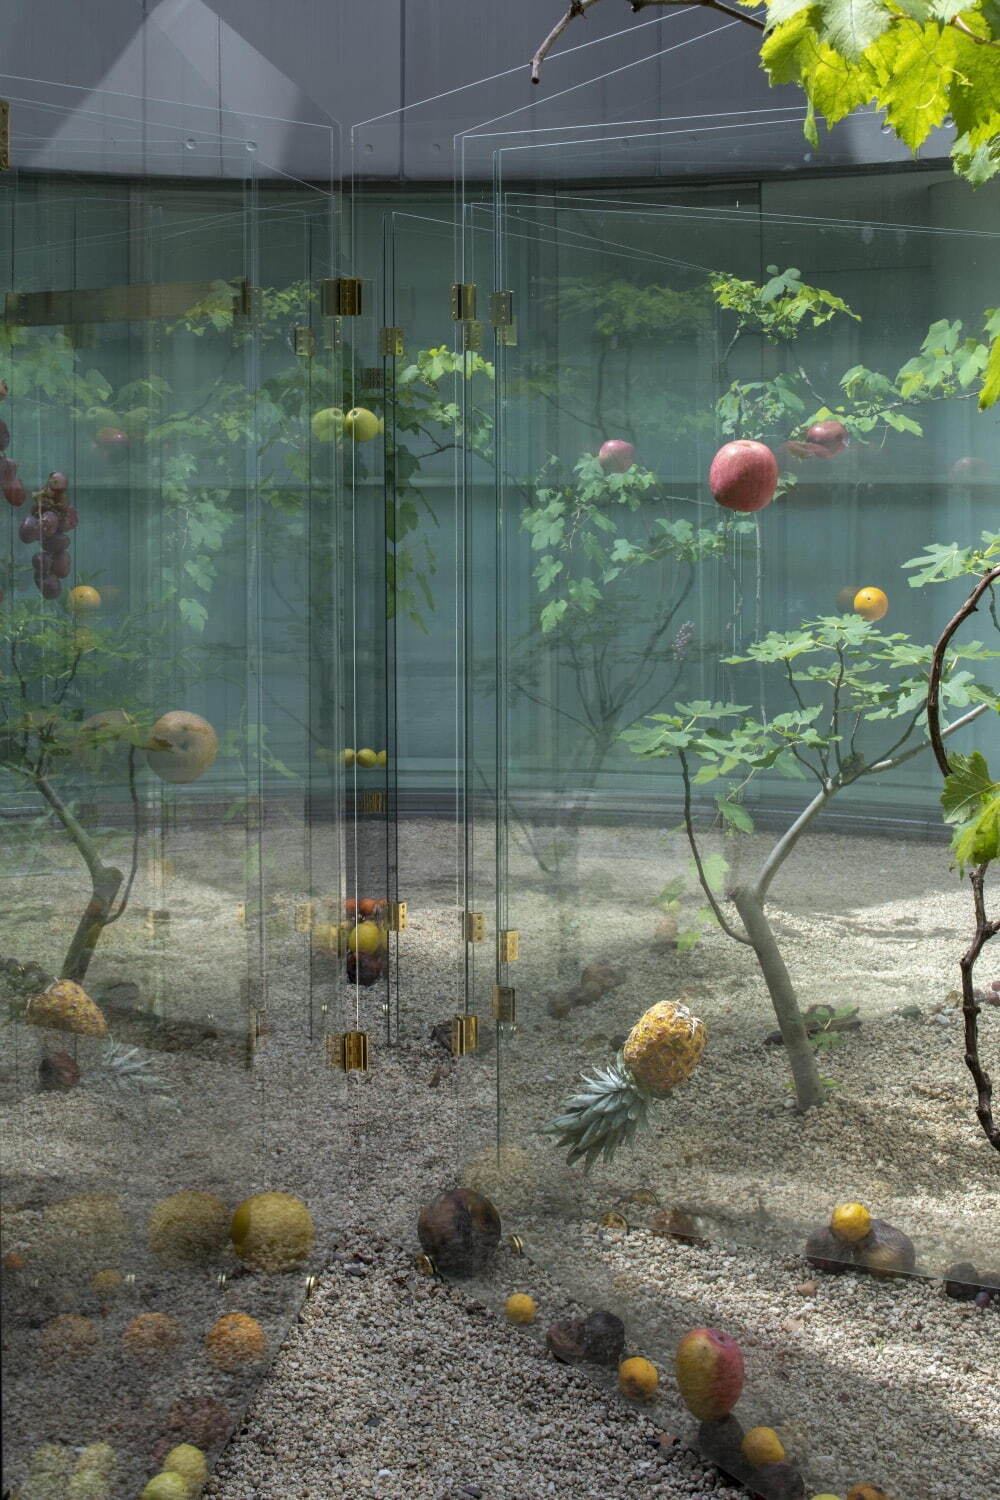 和田礼治郎 《FORBIDDEN FRUIT》 2023年 強化ガラス、真鍮、果物、植物
展示風景：広島市現代美術館 撮影：表恒匡